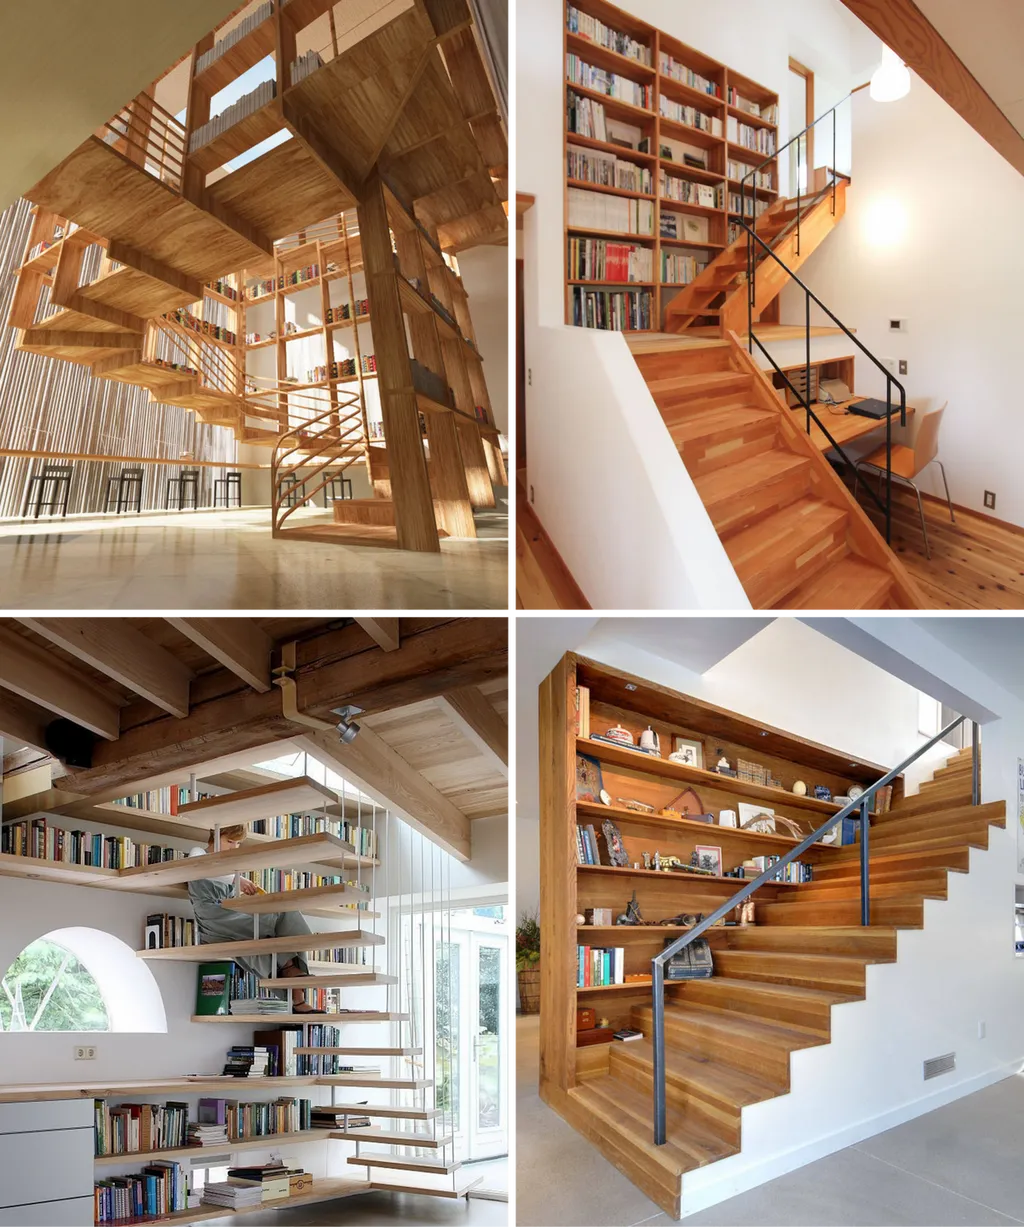 Mẫu cầu thang có thêm công dụng lưu trữ giúp bạn tận dụng tối đa không gian và hoàn toàn có thể biến căn nhà trở nên sinh động với các thiết kế đậm chất nghệ thuật.